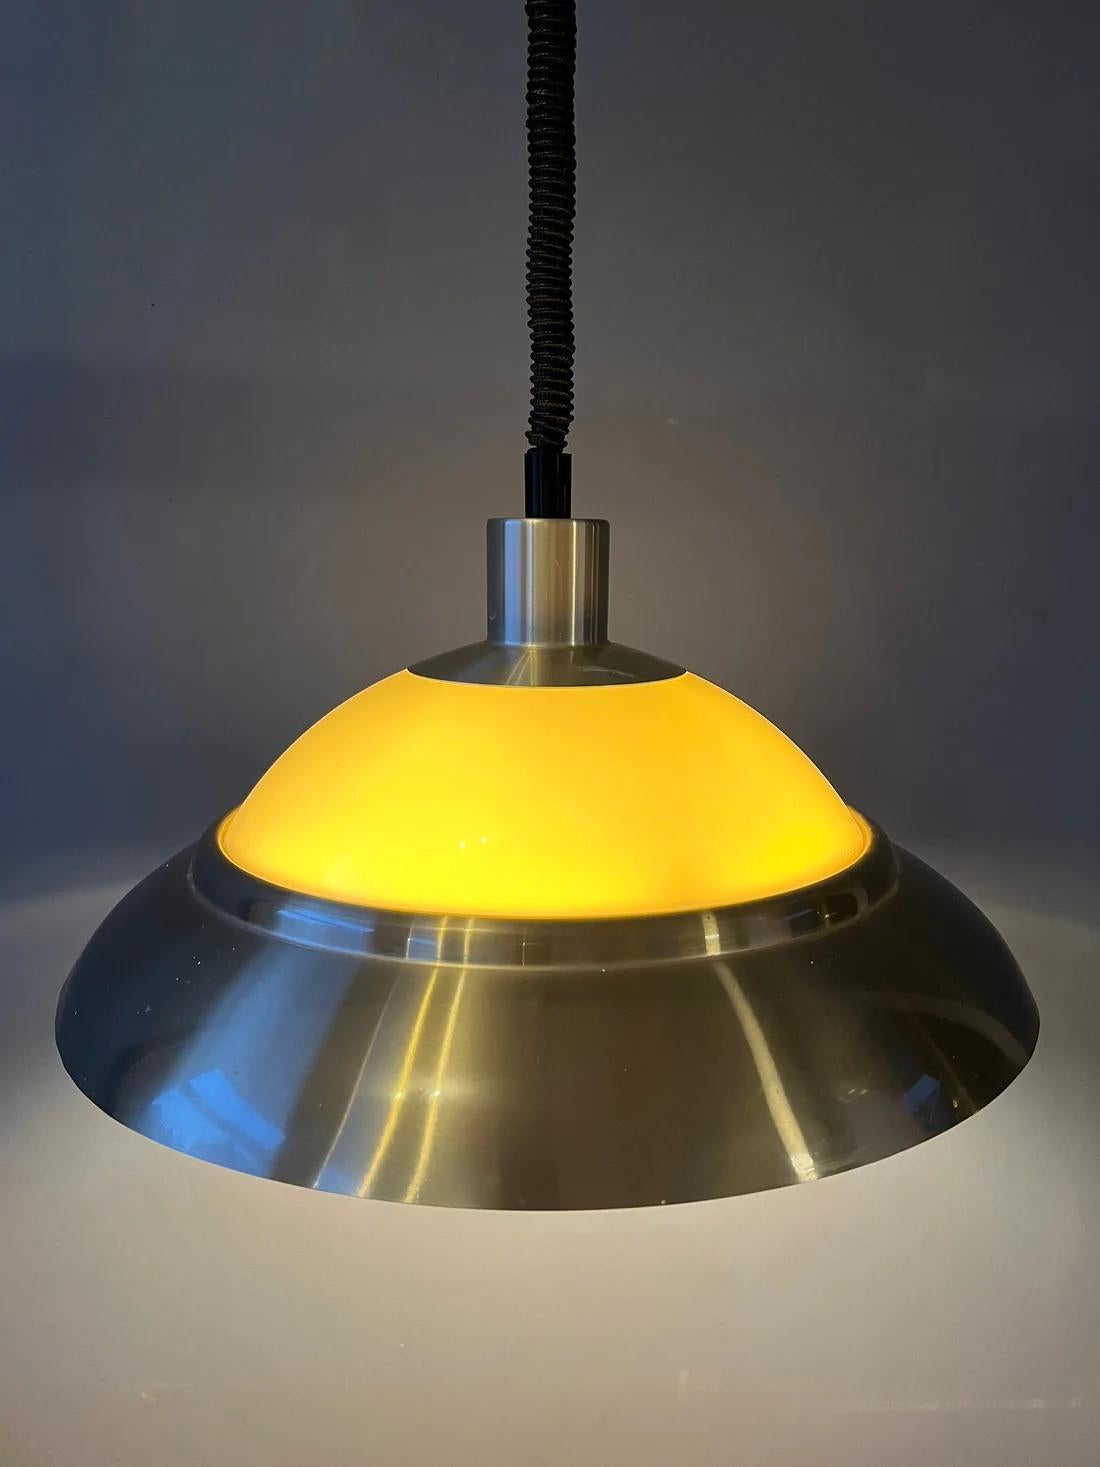 Vintage Dijkstra Space Age Pendelleuchte. Die Leuchte besteht aus einem Aluminium- und einem Plexiglasteil, die eine schöne Lichtverteilung erzeugen. Die Lampe benötigt eine E27/26 (Standard) Glühbirne.

Abmessungen:
ø Schirm: 37 cm
Höhe (Schatten):